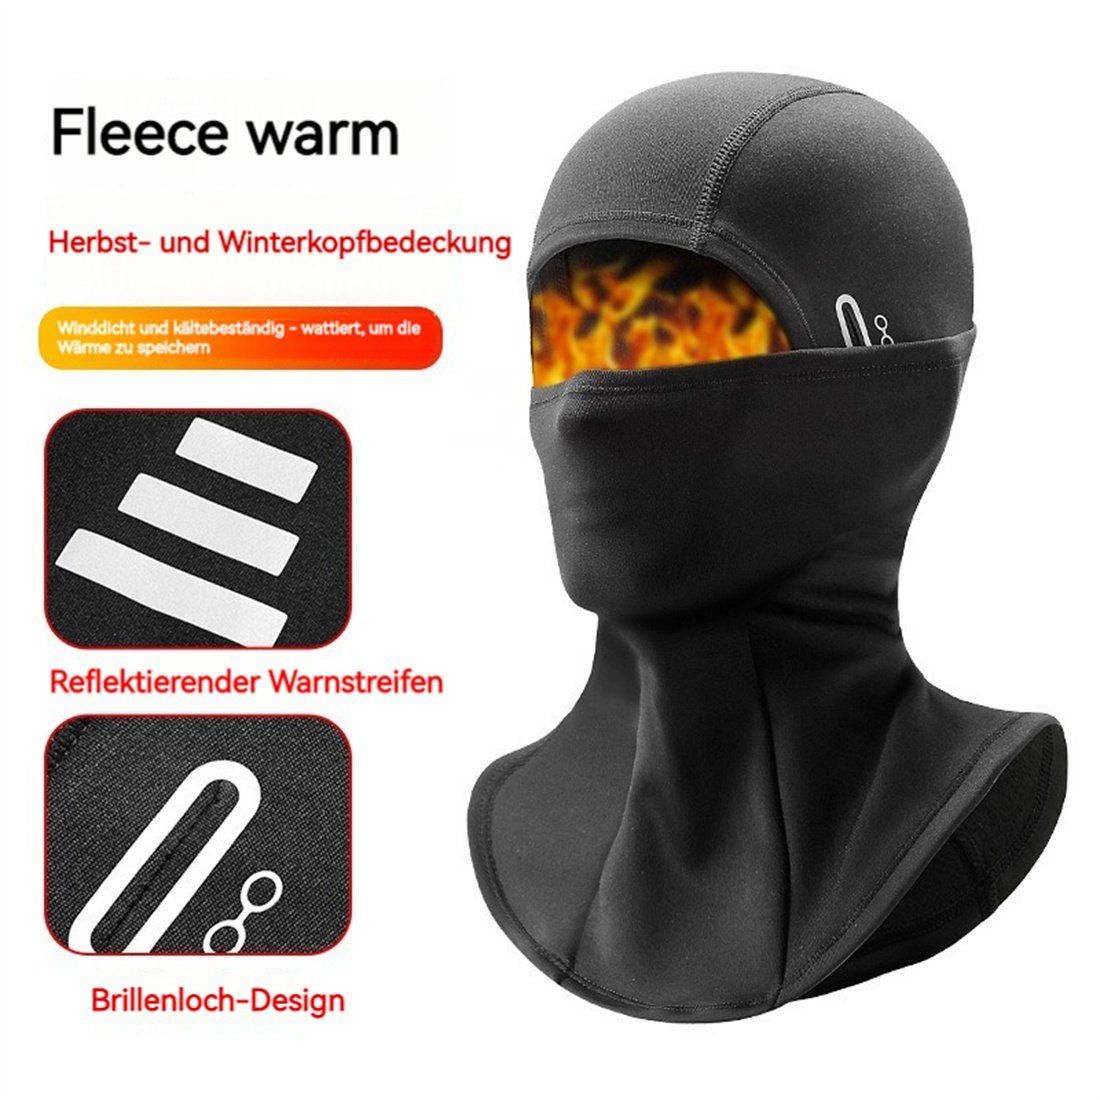 DÖRÖY Sturmhaube Warme Wintersport, dunkelgrau gepolsterte den Skimasken Kopfbedeckungen für